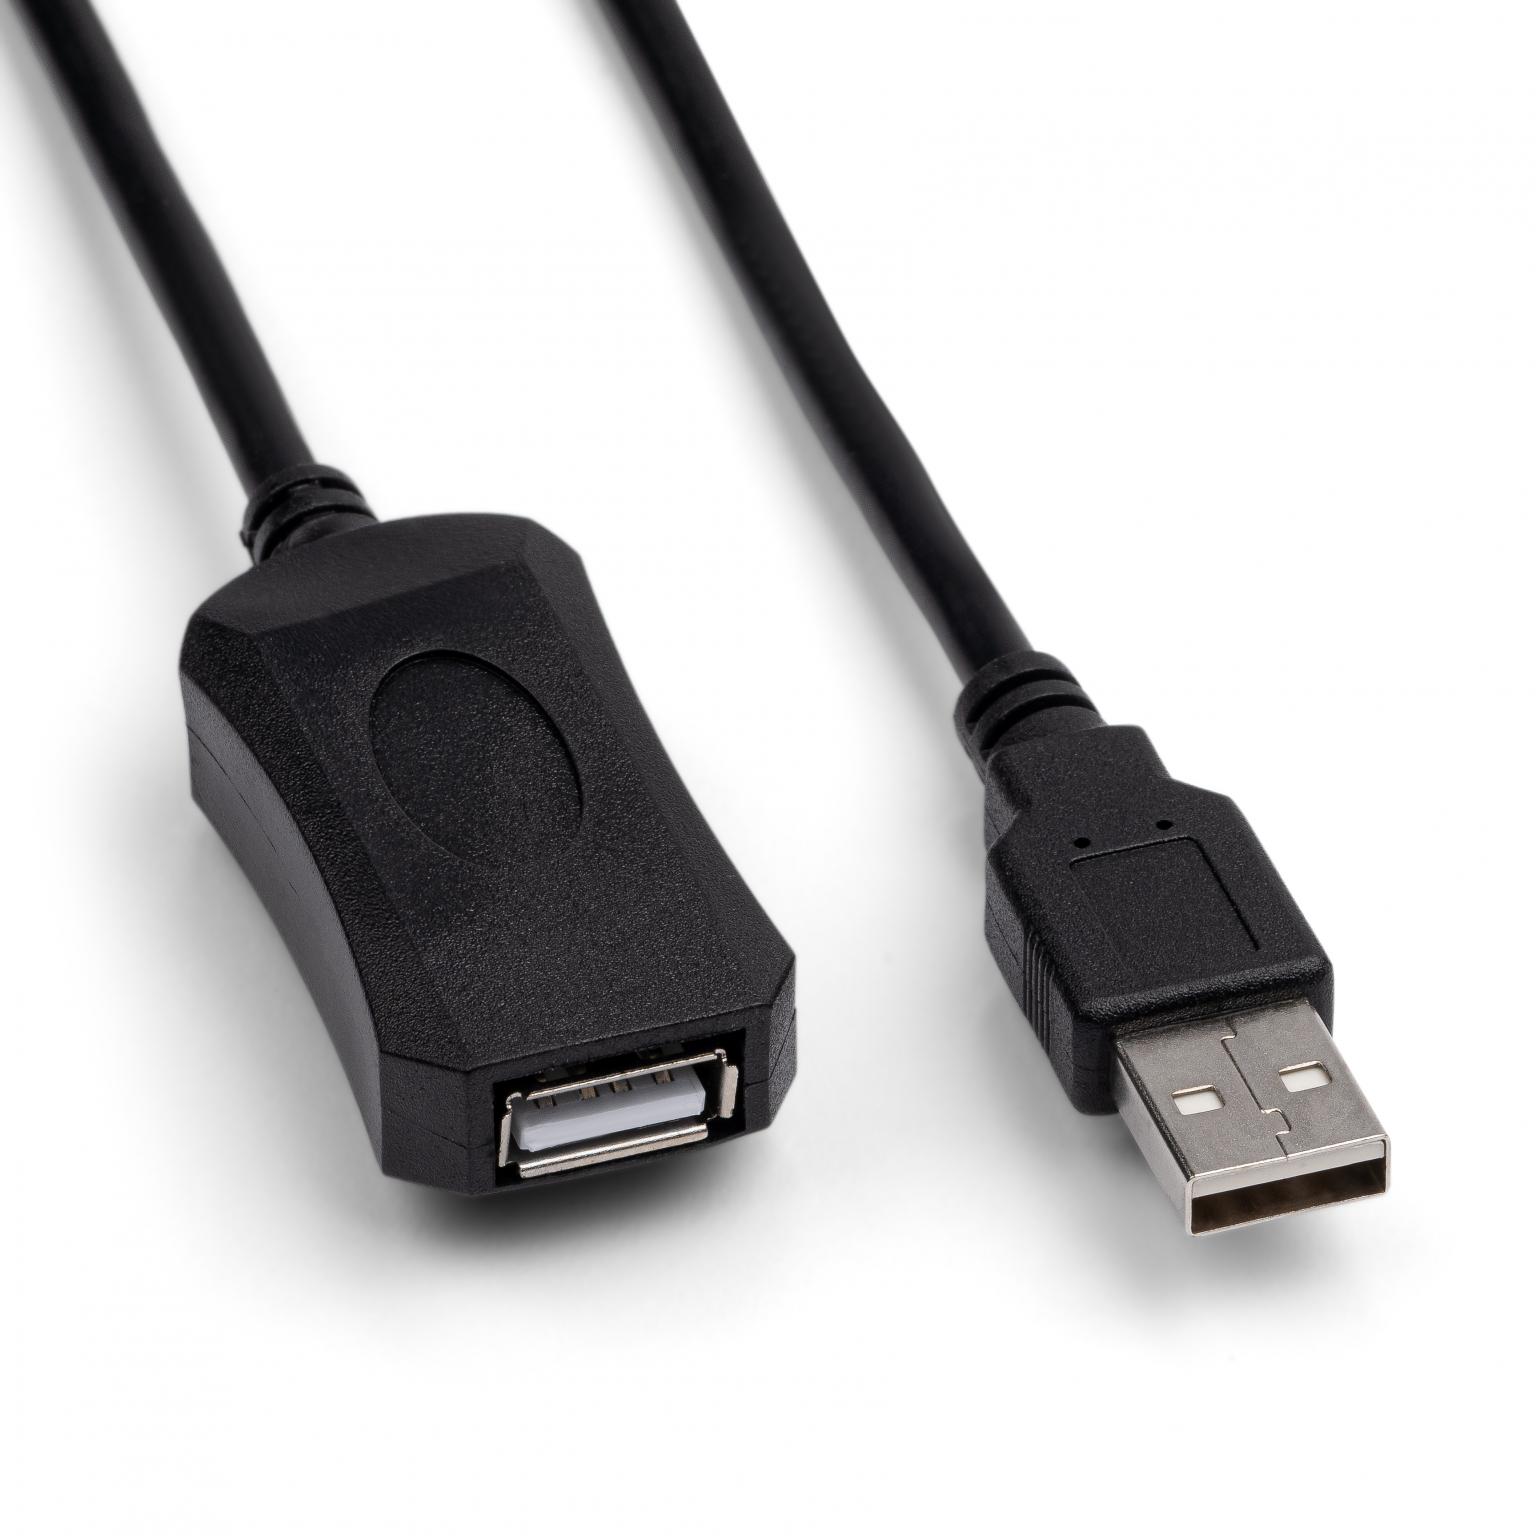 verlengkabel met versterker - A naar USB A verlengkabel - Zwart, Versie: 2.0 - - Verlengkabel met Aansluiting 1: USB A male, Aansluiting 2: USB A female, Lengte: 10 meter.